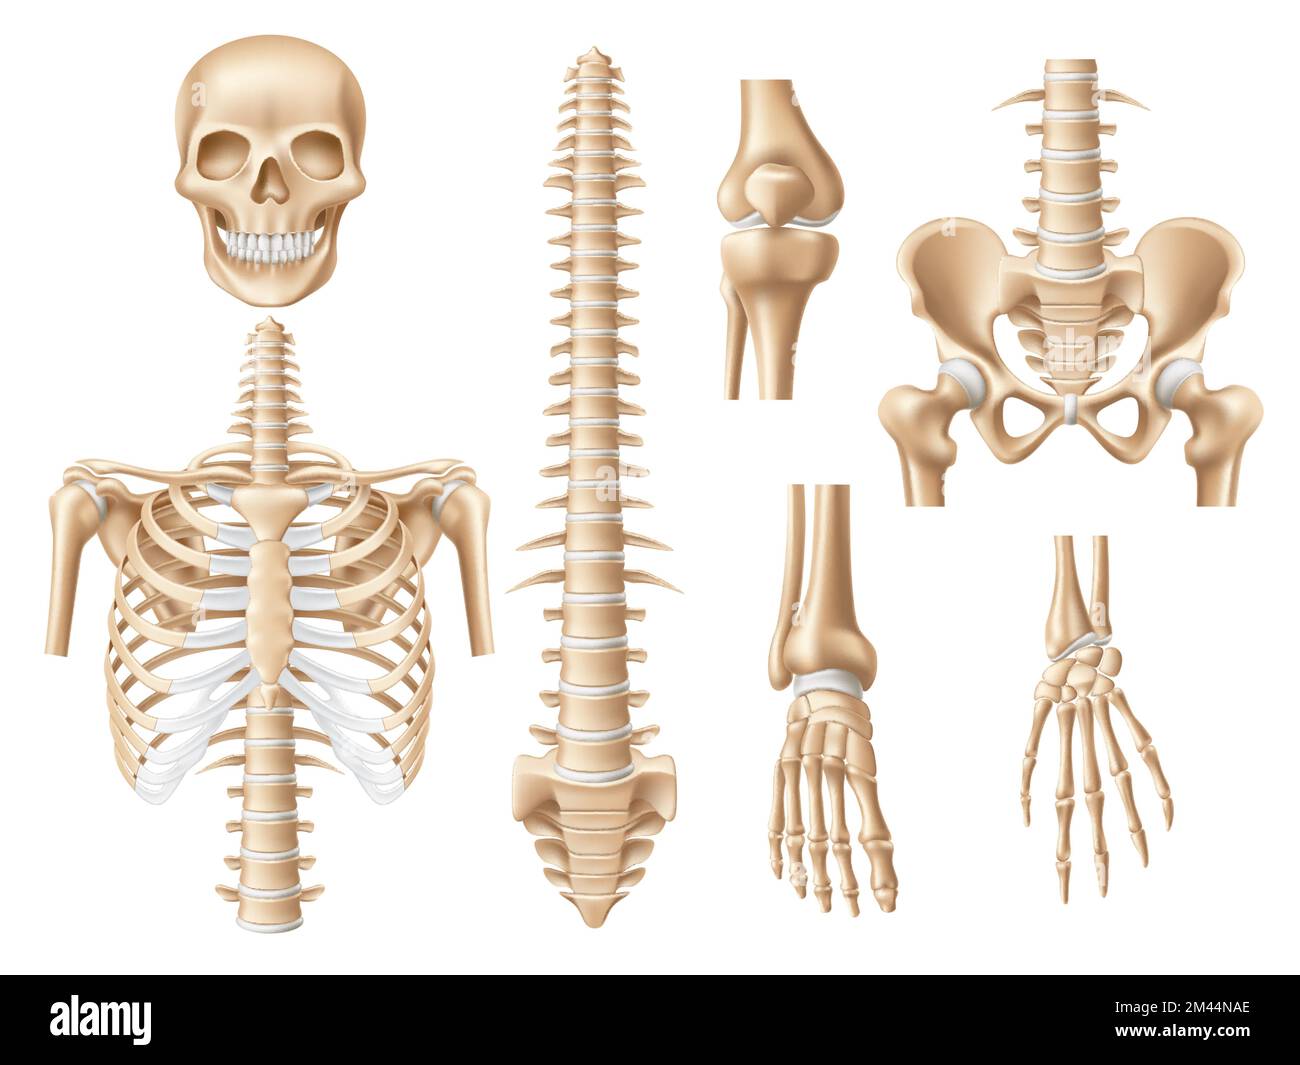 Des os humains réalistes. 3d parties du squelette anatomique, crâne, côtes, rachis et bassin, colonne vertébrale, modèle éducatif médical et artistique Illustration de Vecteur